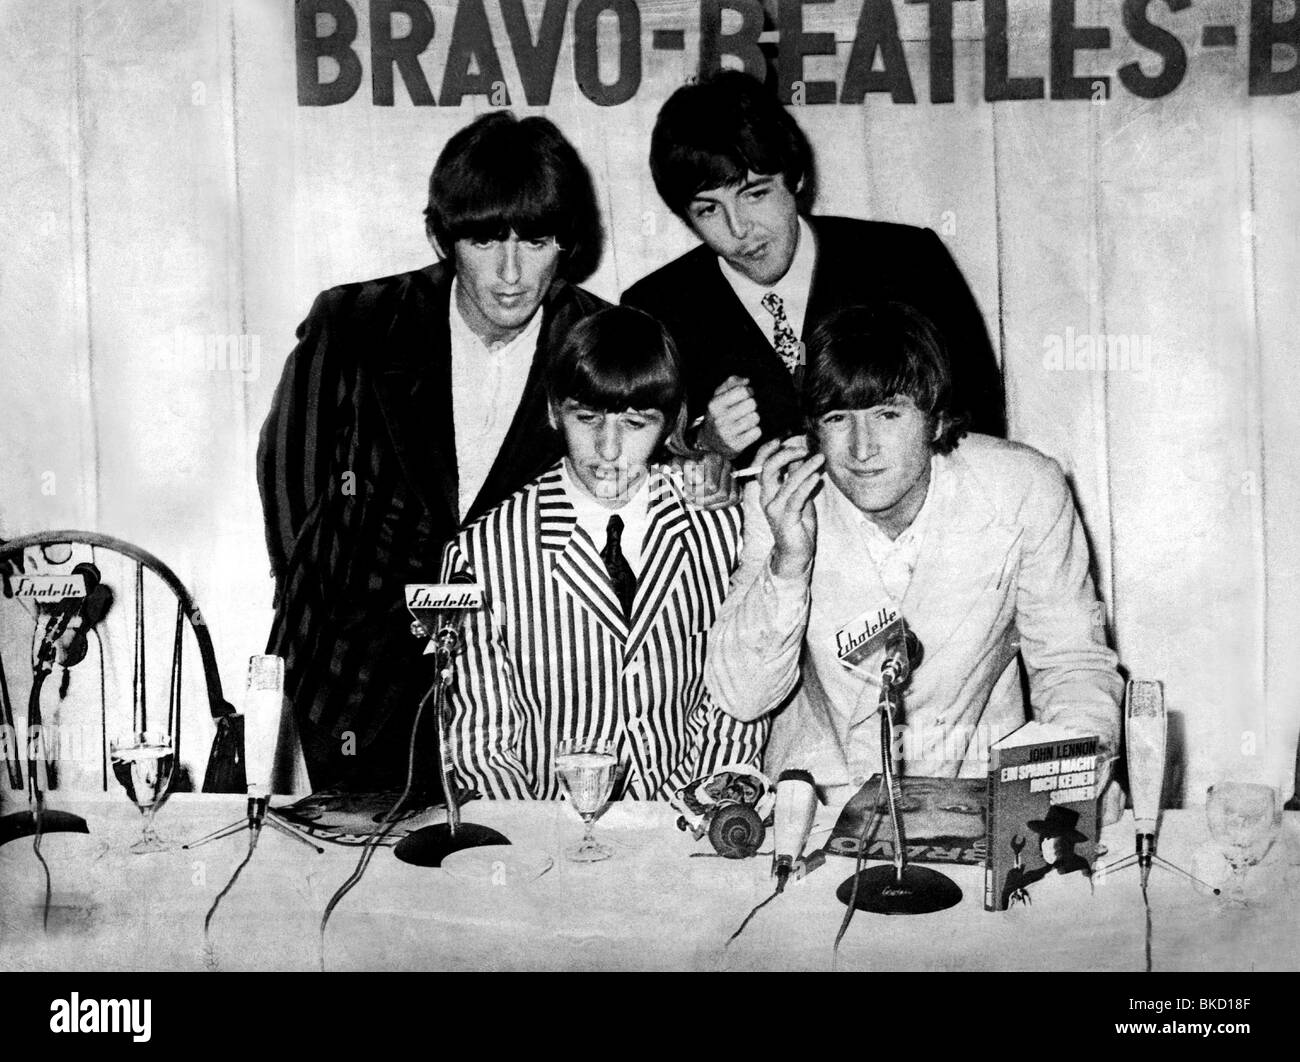 Beatles, 1960 - 1970, britische Rockband, Paul McCartney, John Lennon Ringo Starr und George Harrison, Pressekonferenz, "Bravo Blitz Tour", München, 14.9.1966, Stockfoto